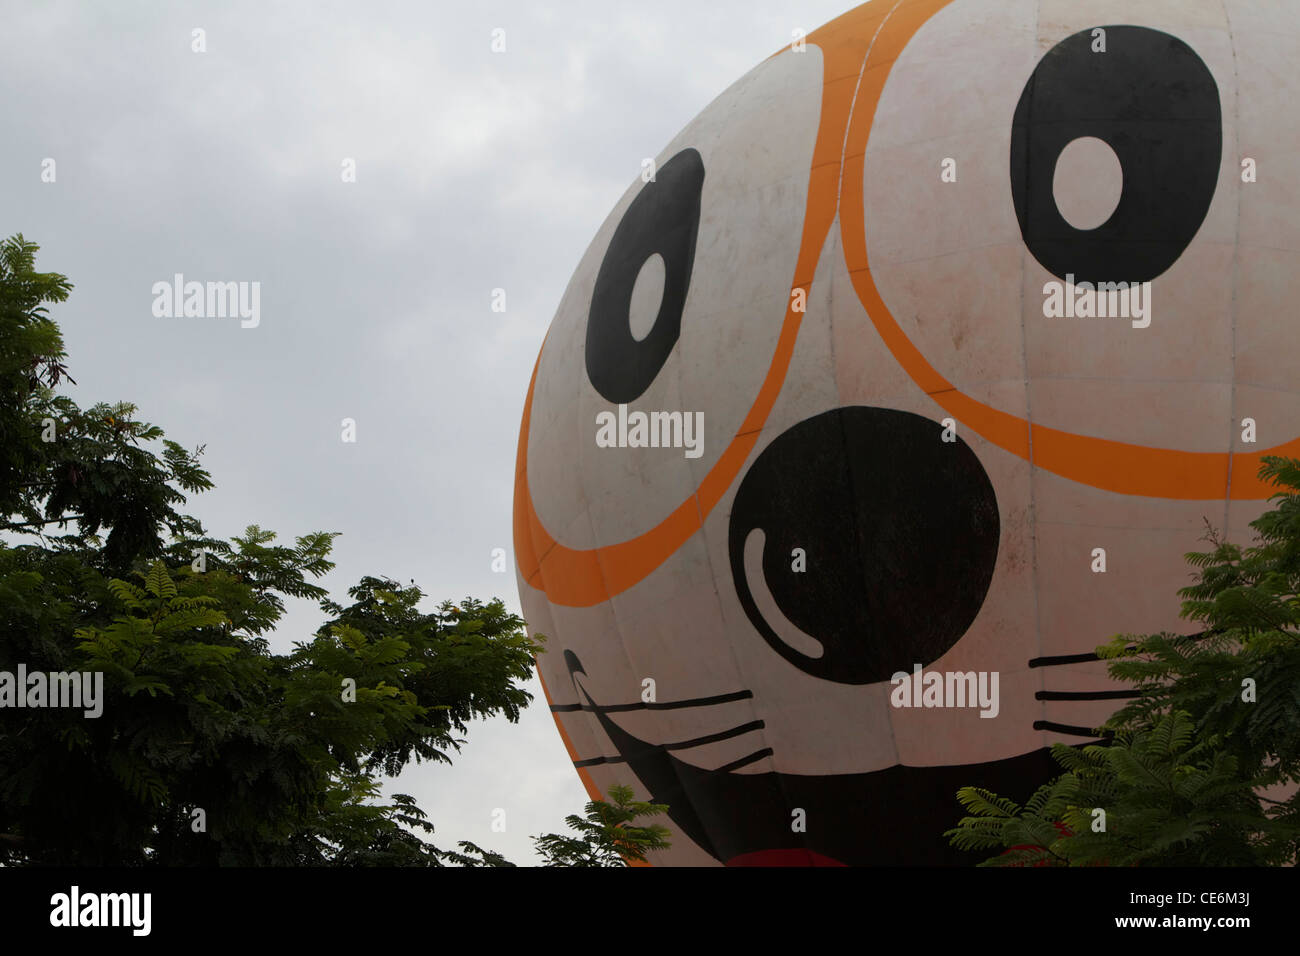 hot air balloon with cartoon cat on it, Kuala Lumpur Stock Photo